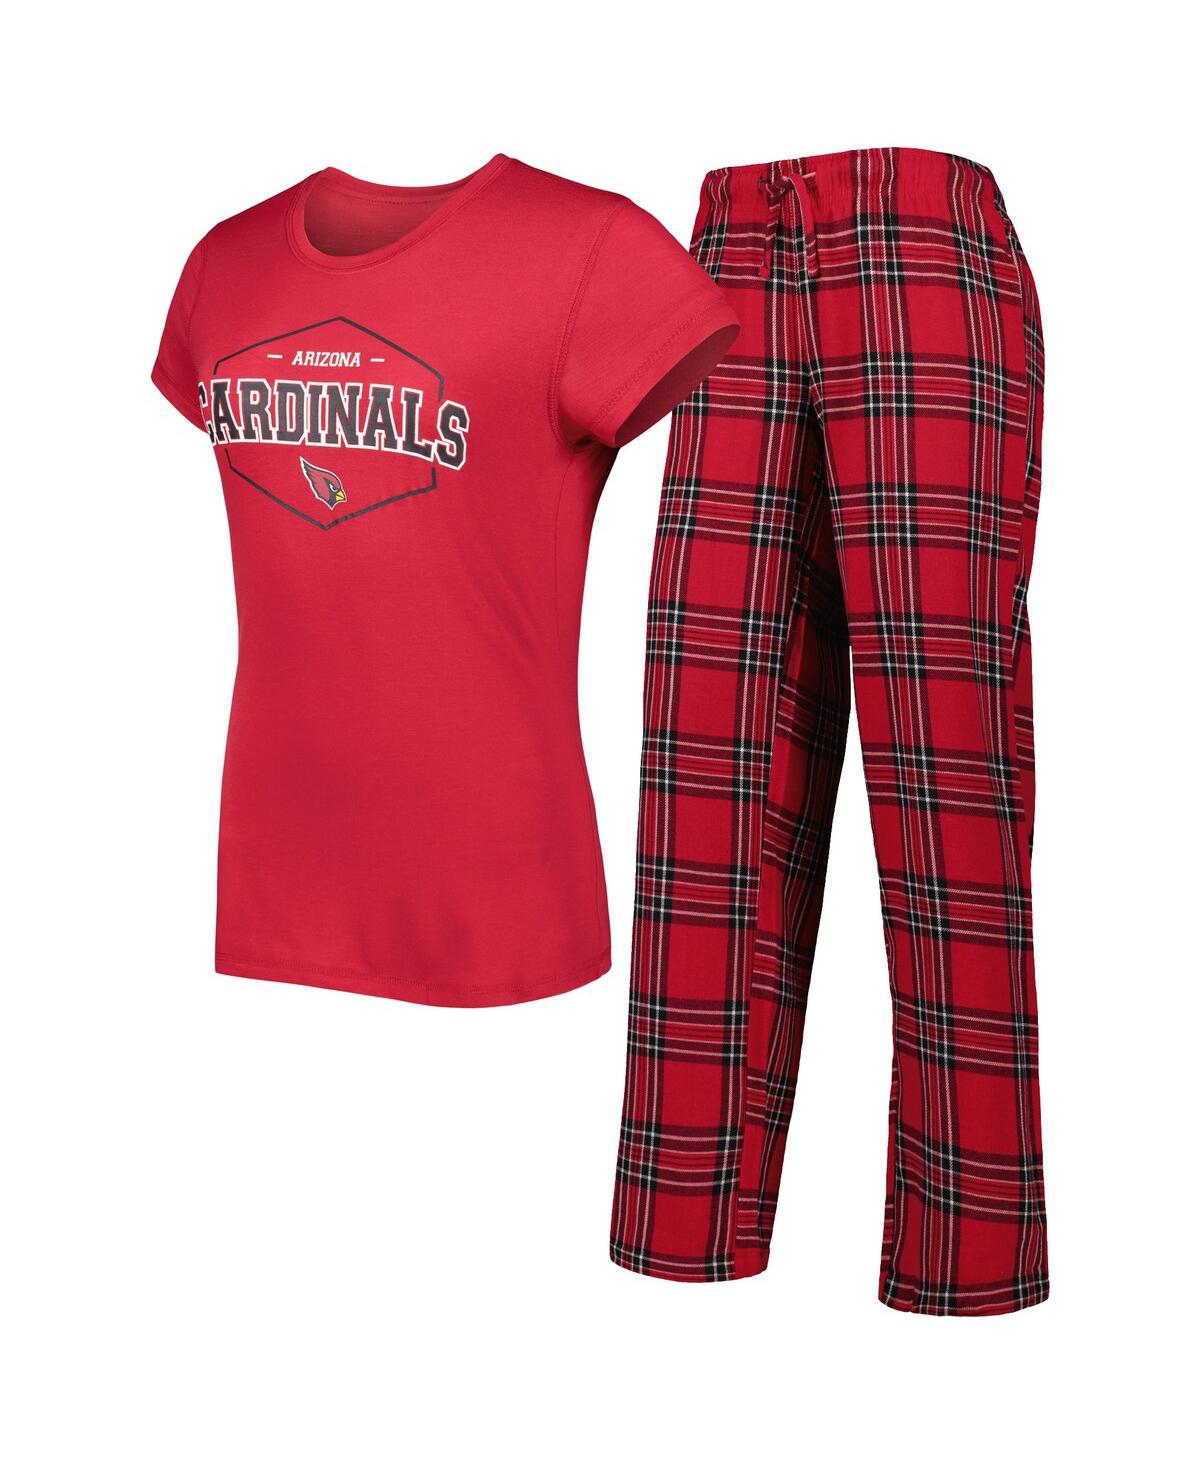 Women's Concepts Sport Cardinal, Black Arizona Cardinals Badge T-shirt and Pants Sleep Set - Cardinal, Black